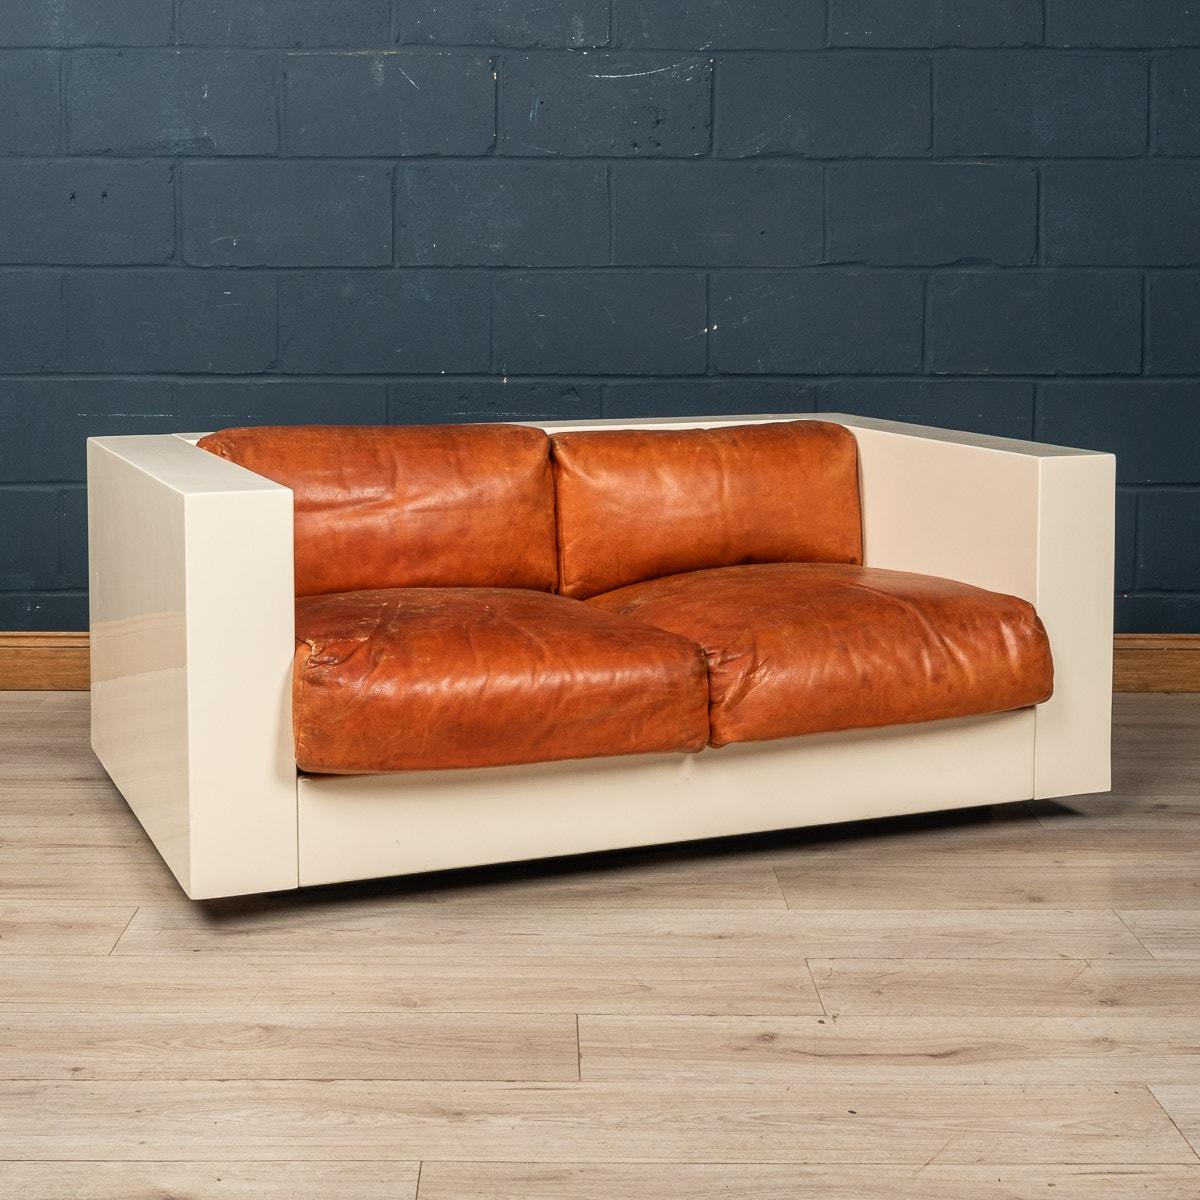 Ein schönes Zweisitzer-Sofa, entworfen von dem italienischen Designerpaar Lella und Massimo Vignelli. Das von Poltronova in Florenz hergestellte Sofa ist ein Designklassiker mit einer wunderbaren Kombination aus Off-White und Rot für das Gestell und